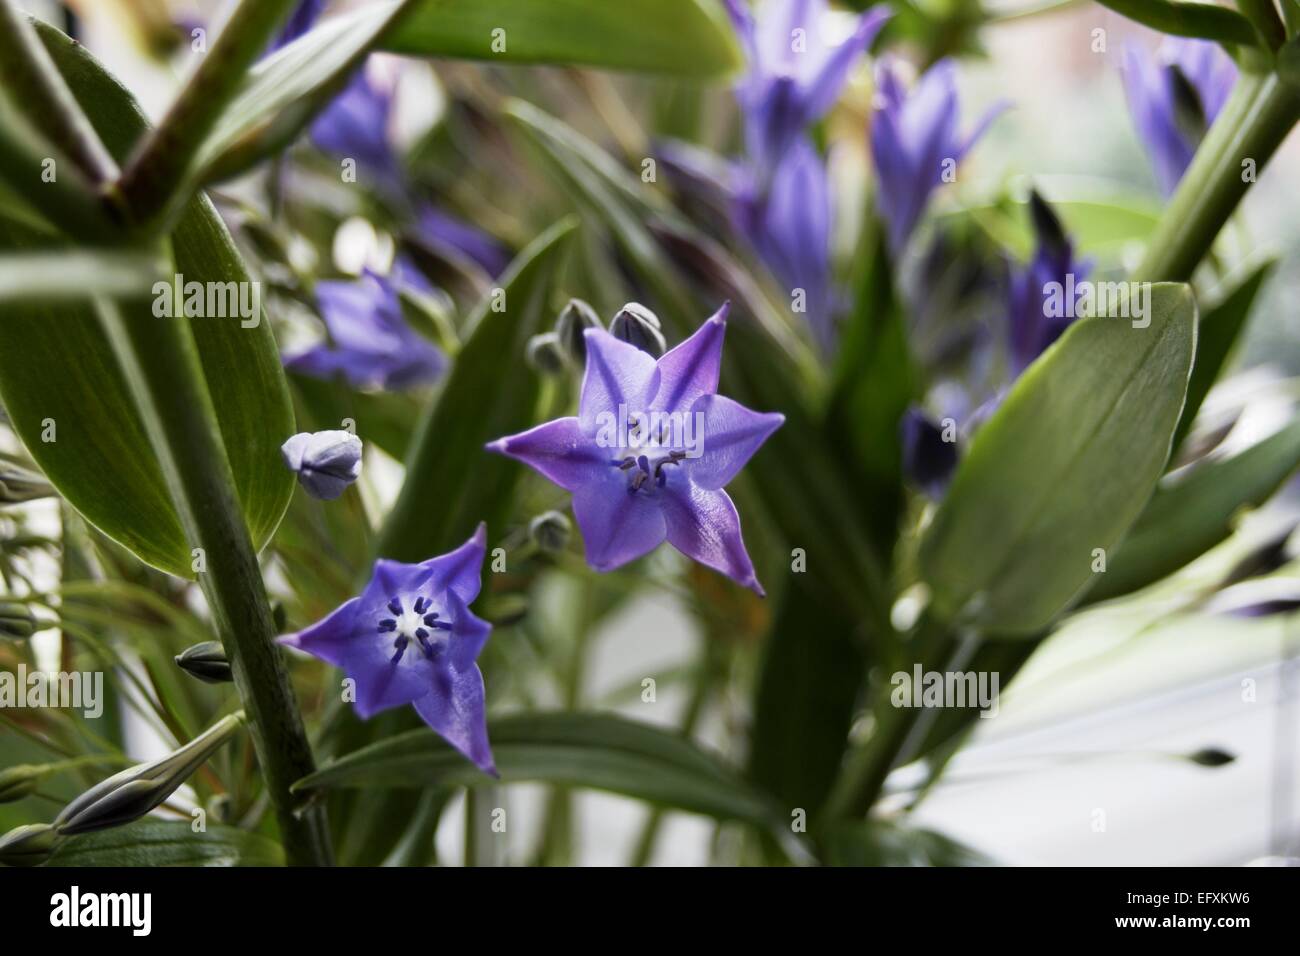 Triteleia Laxa is a triplet lily Stock Photo